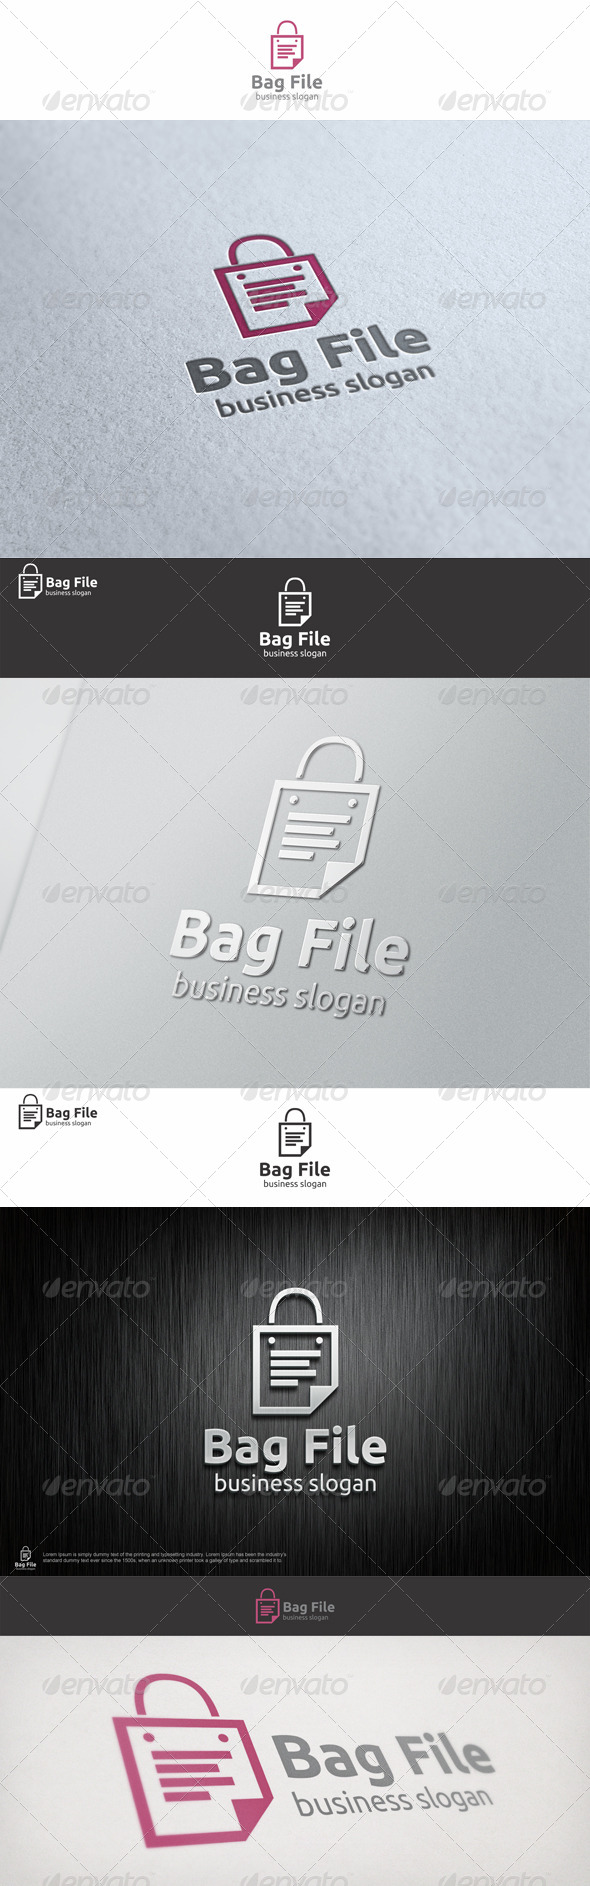 Bag File Shopping Logo